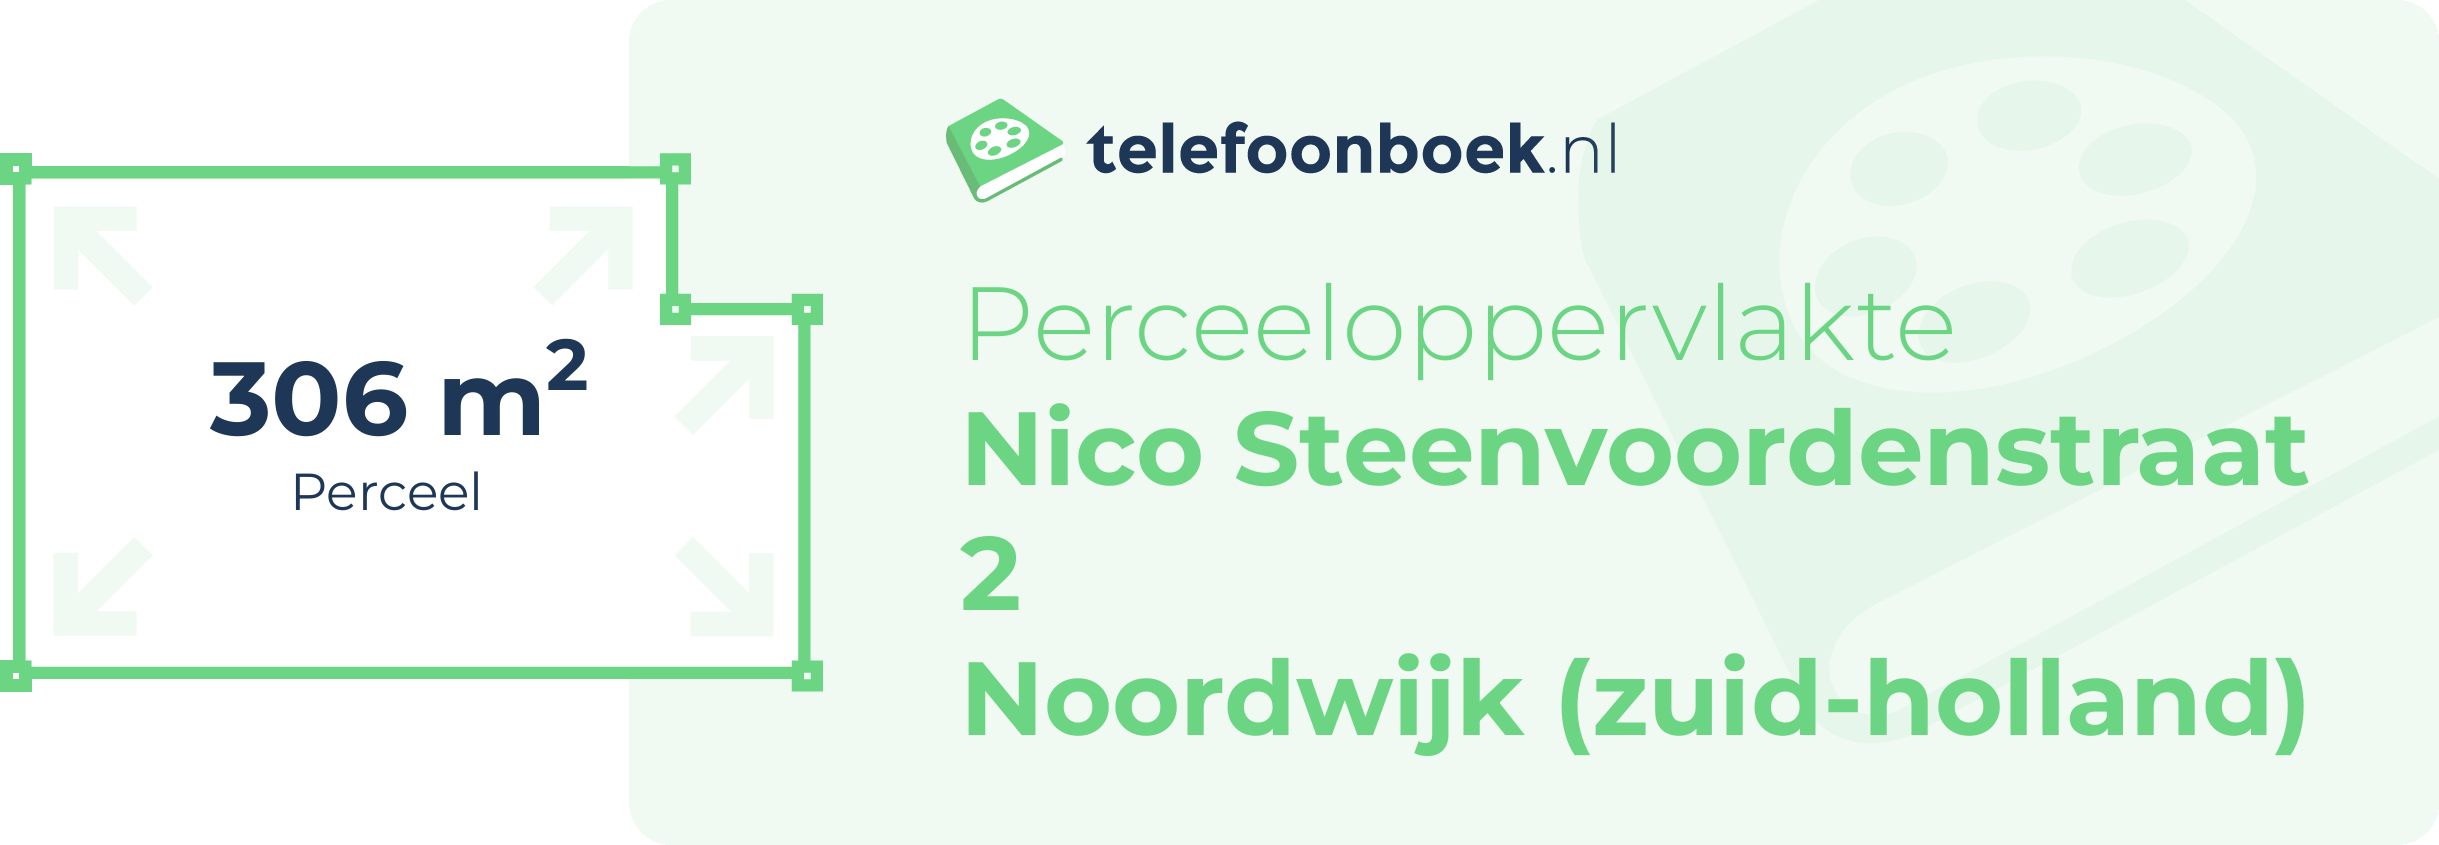 Perceeloppervlakte Nico Steenvoordenstraat 2 Noordwijk (Zuid-Holland)